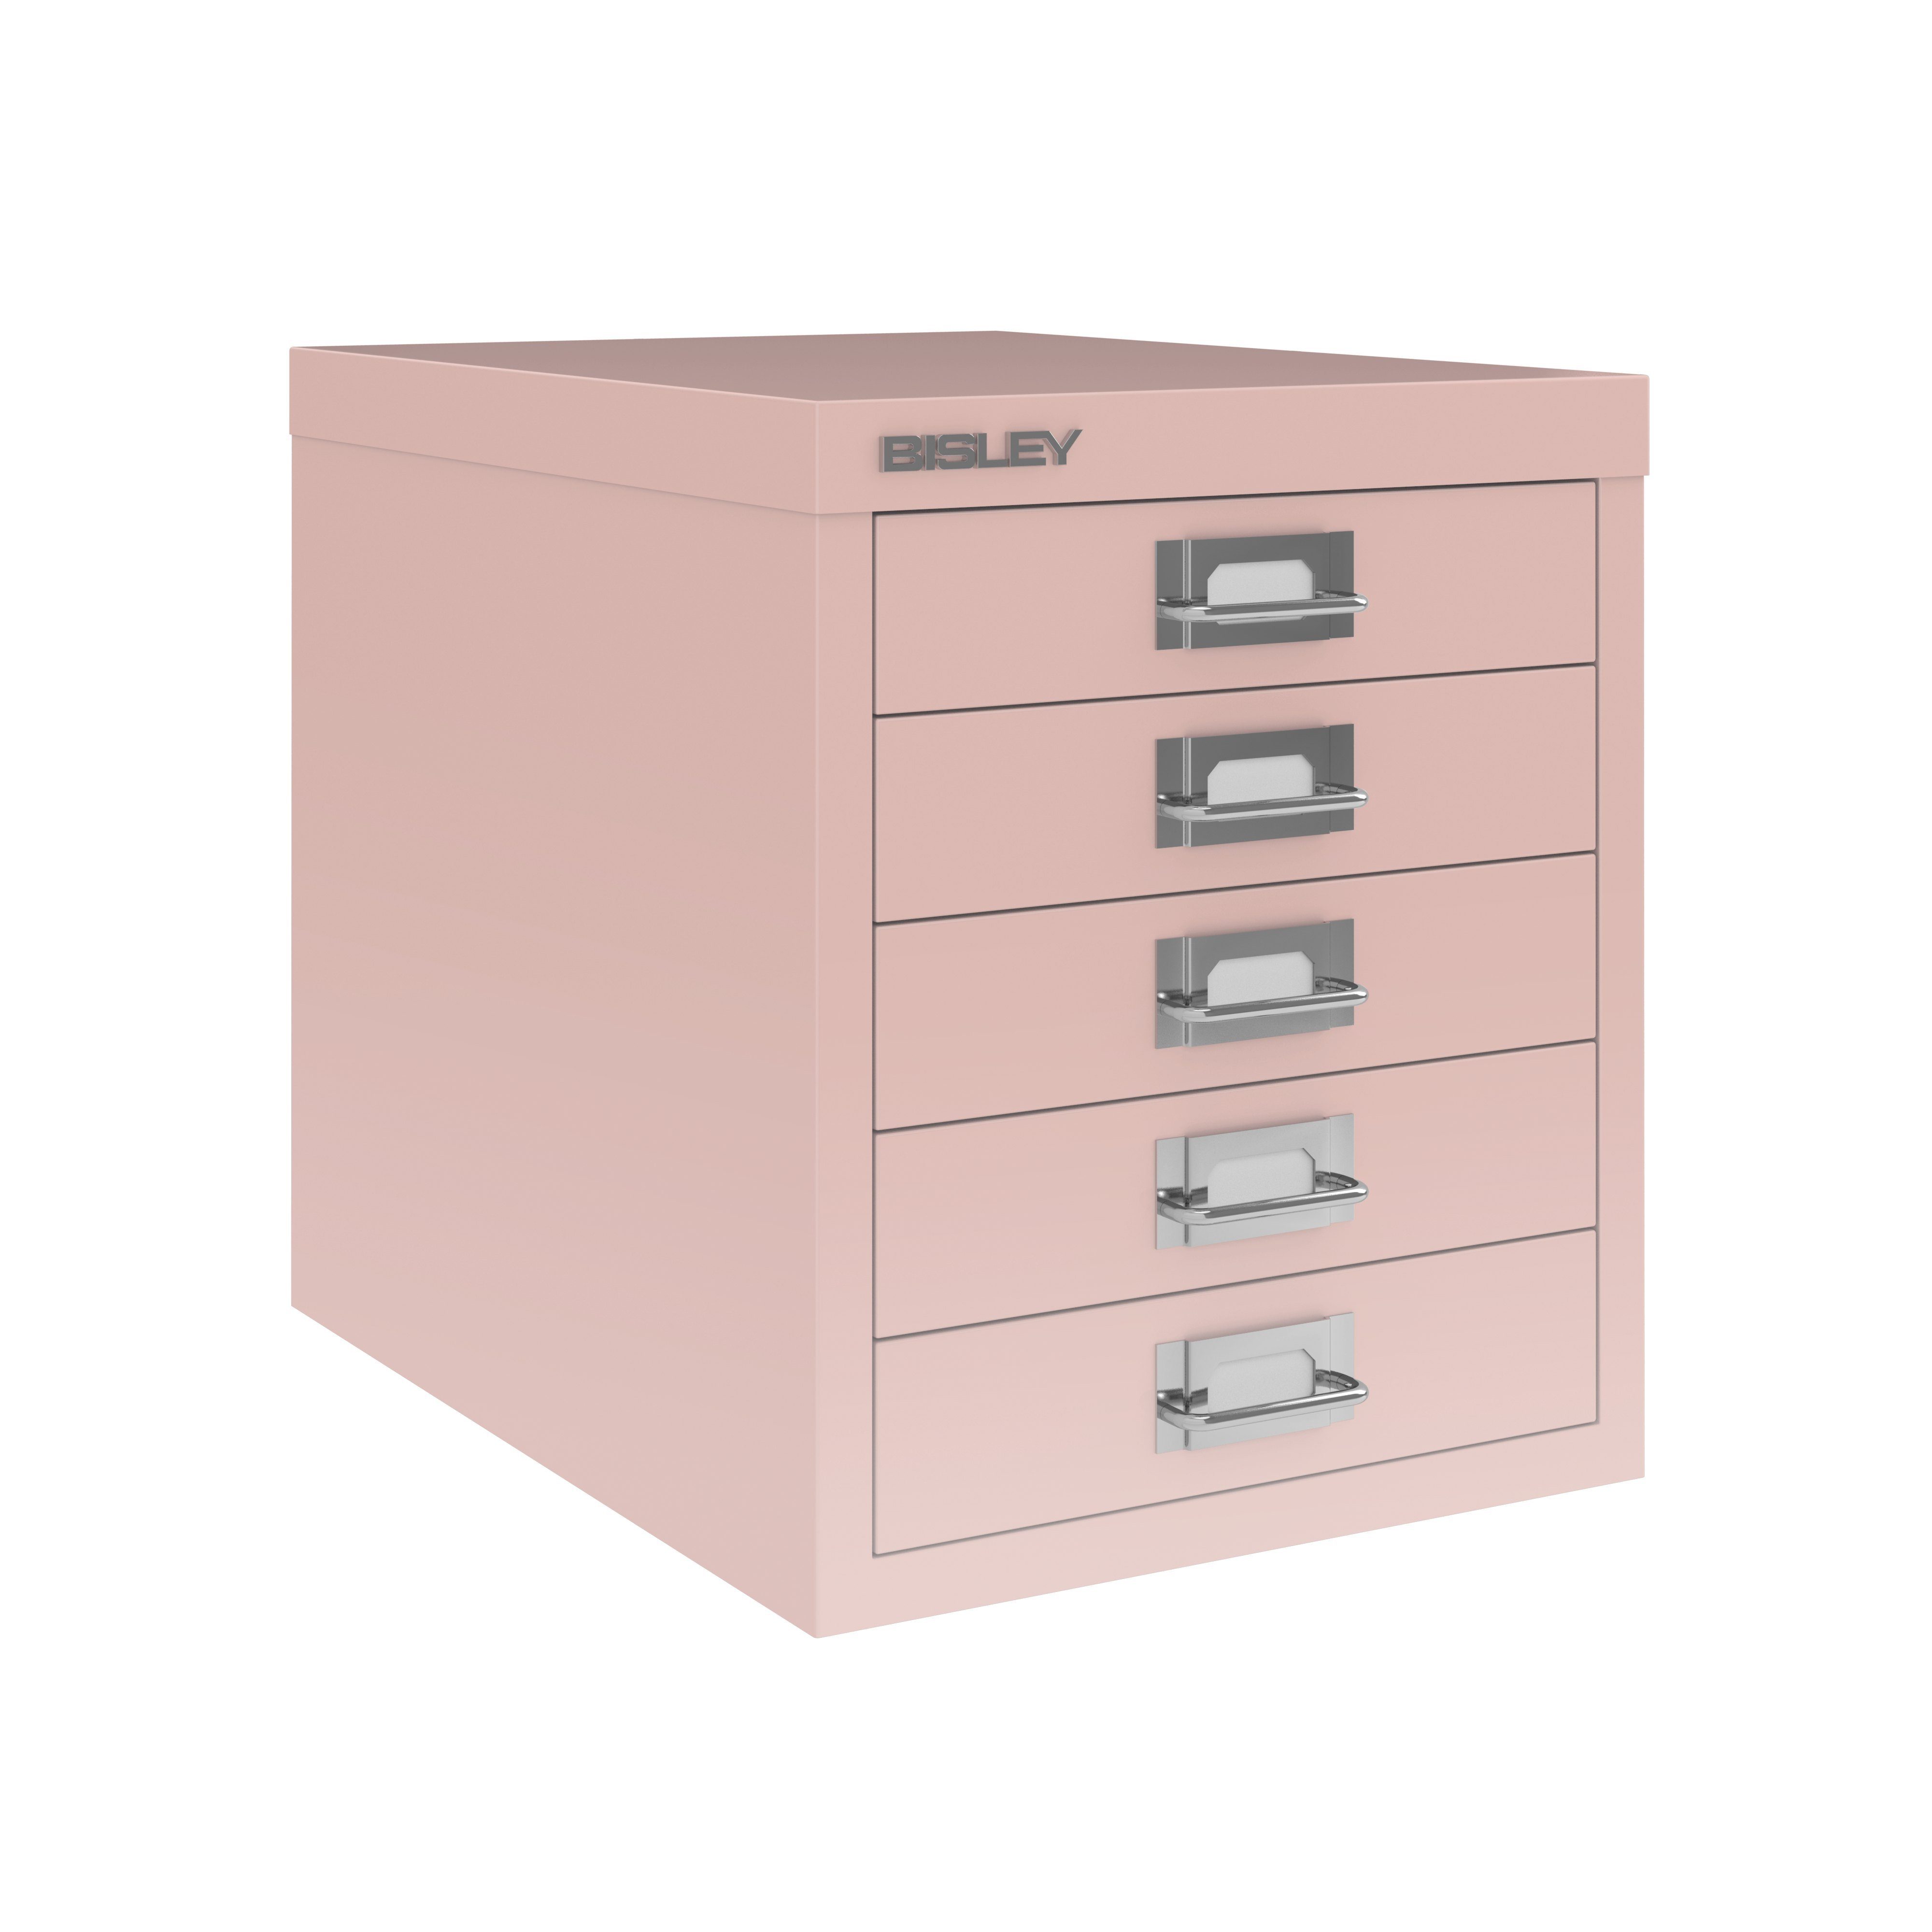 pastell pink - Aktenschrank | Bisley pastellpink